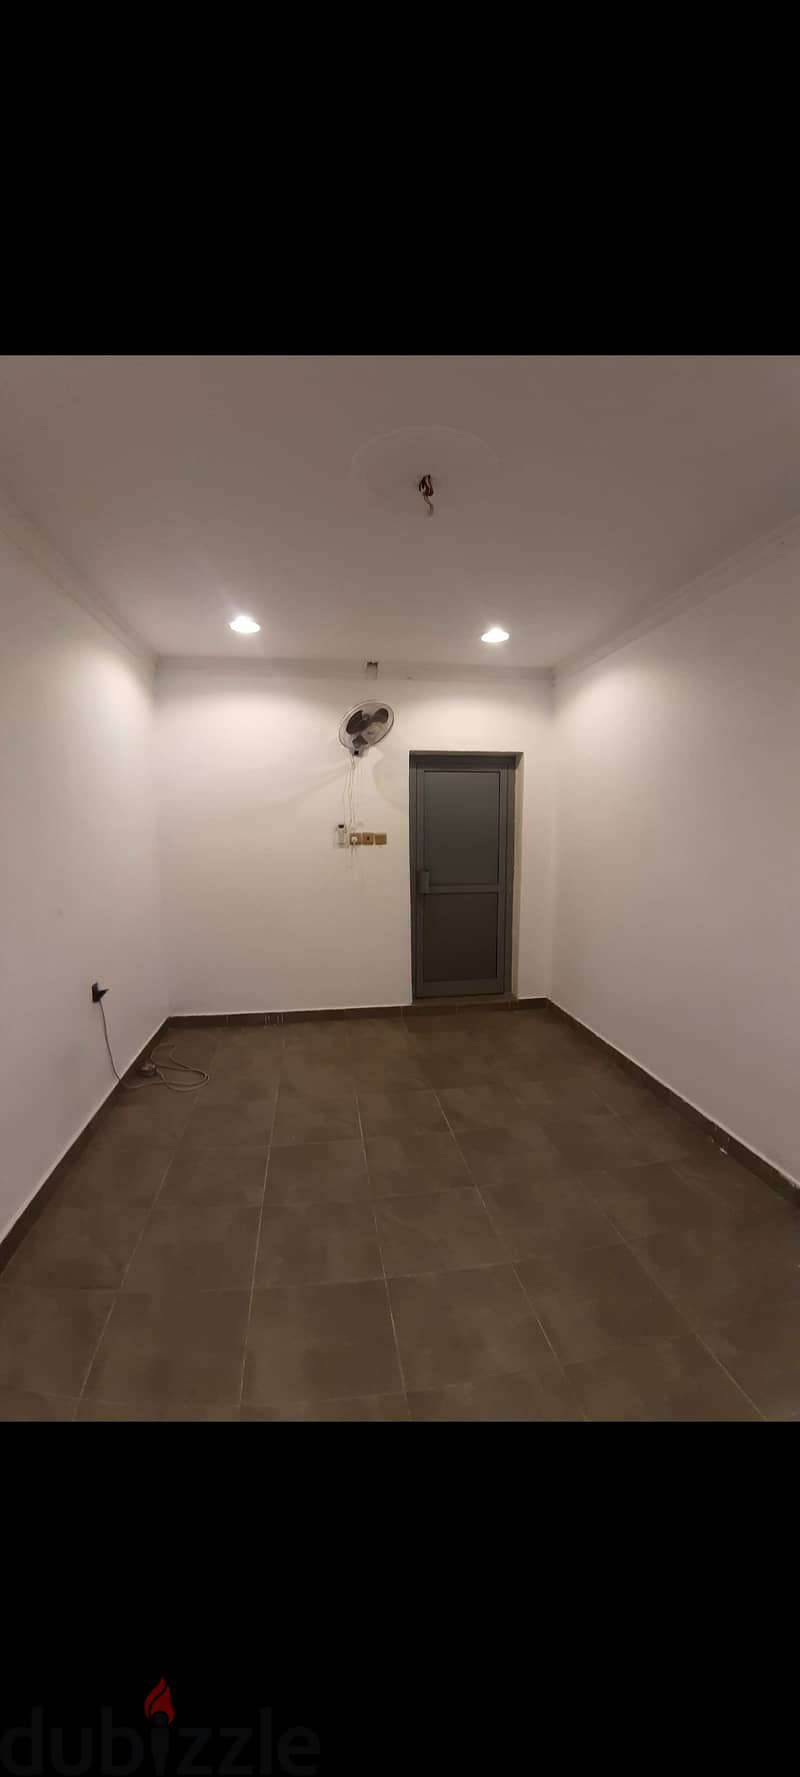 Spacious room 5×6 in hamala 100bd with ewa 7